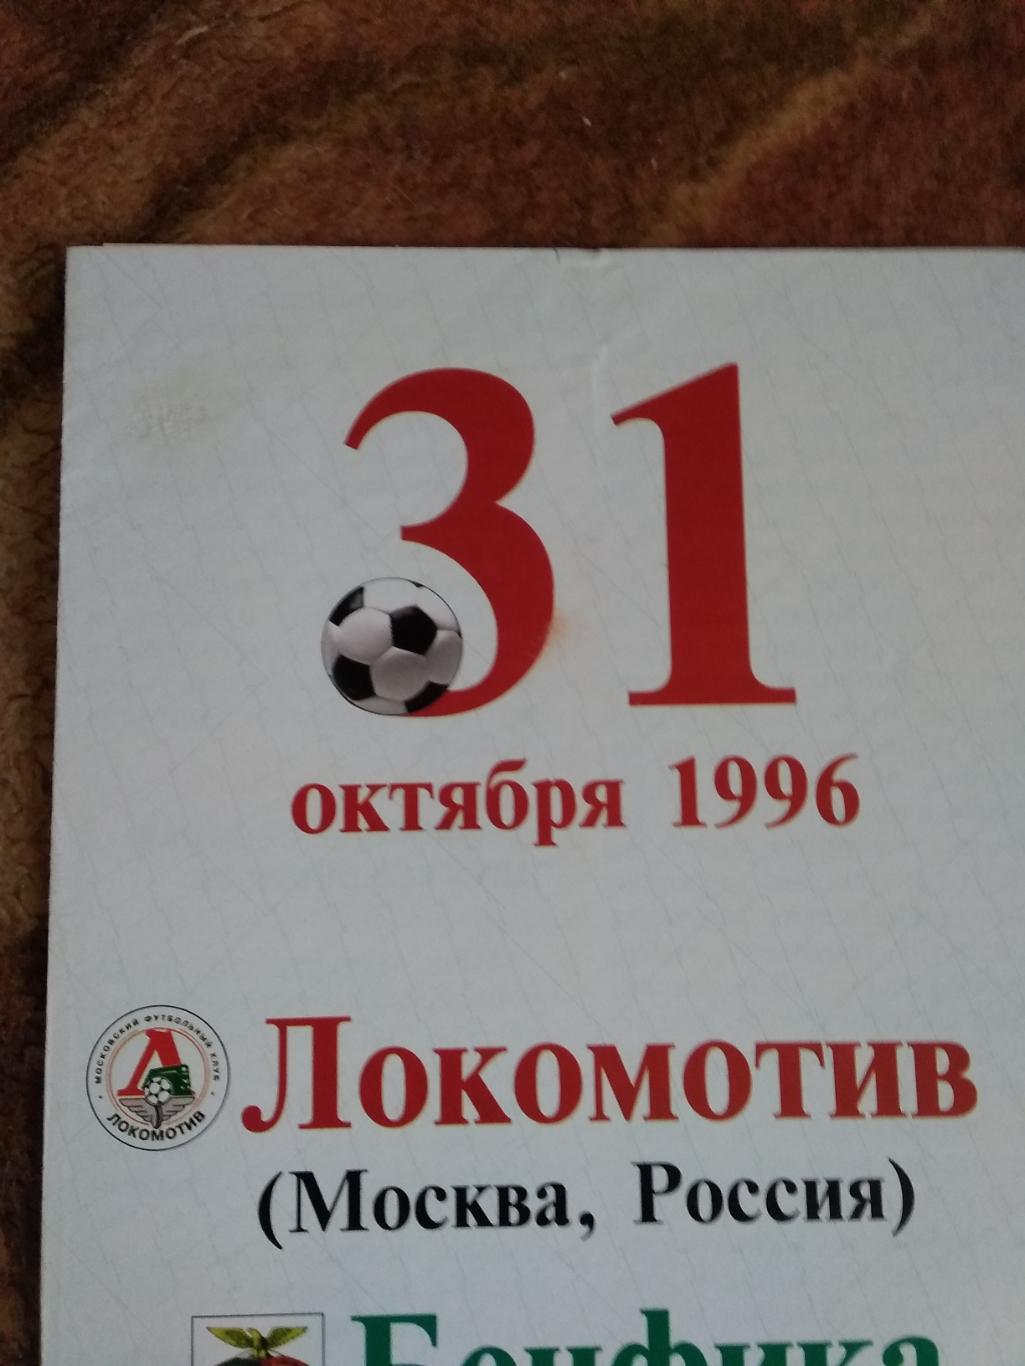 ЕК.Локомотив (Москва,Россия) - Бенфика (Португалия) КОК 31.10.1996 г. 2